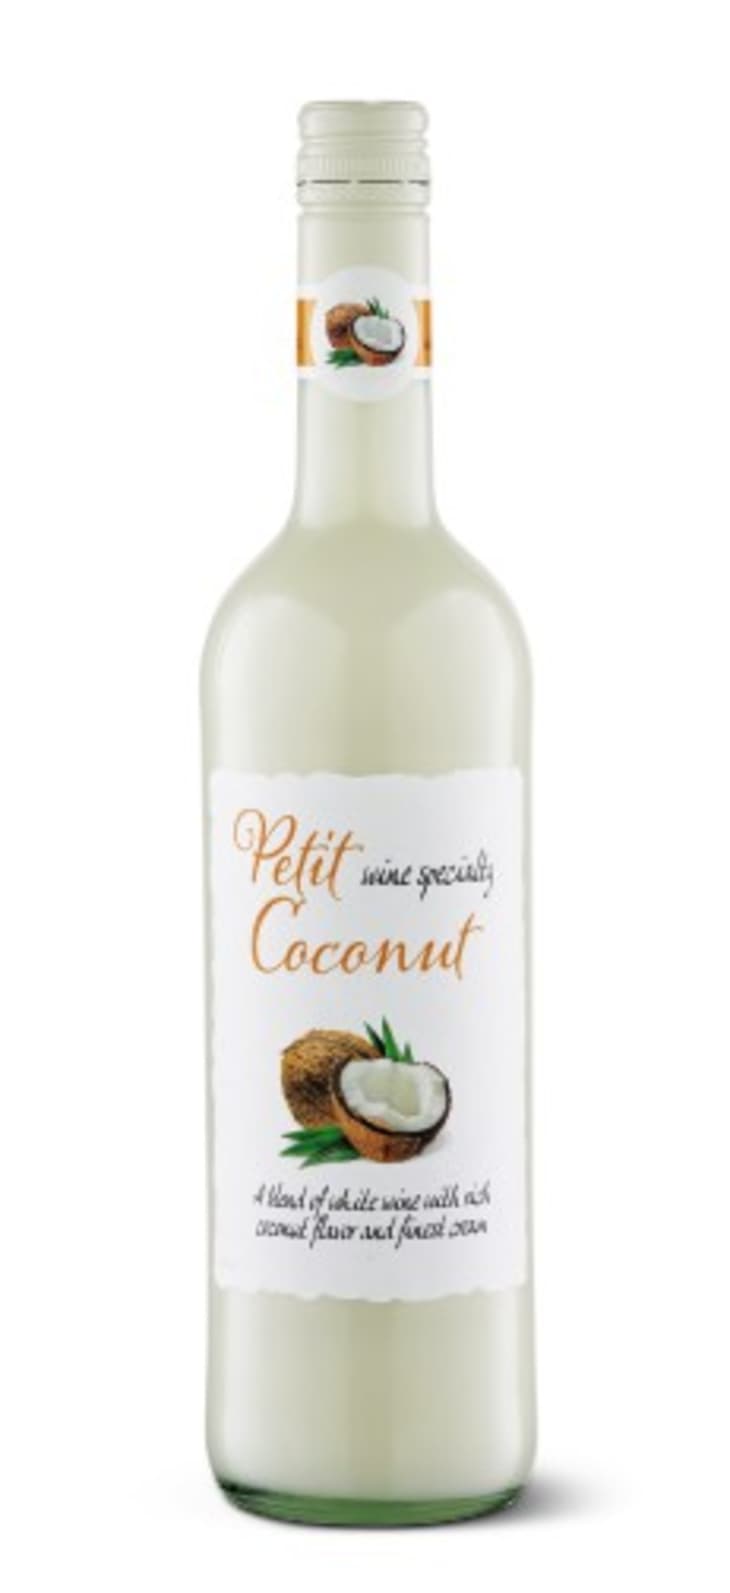 coconut wine